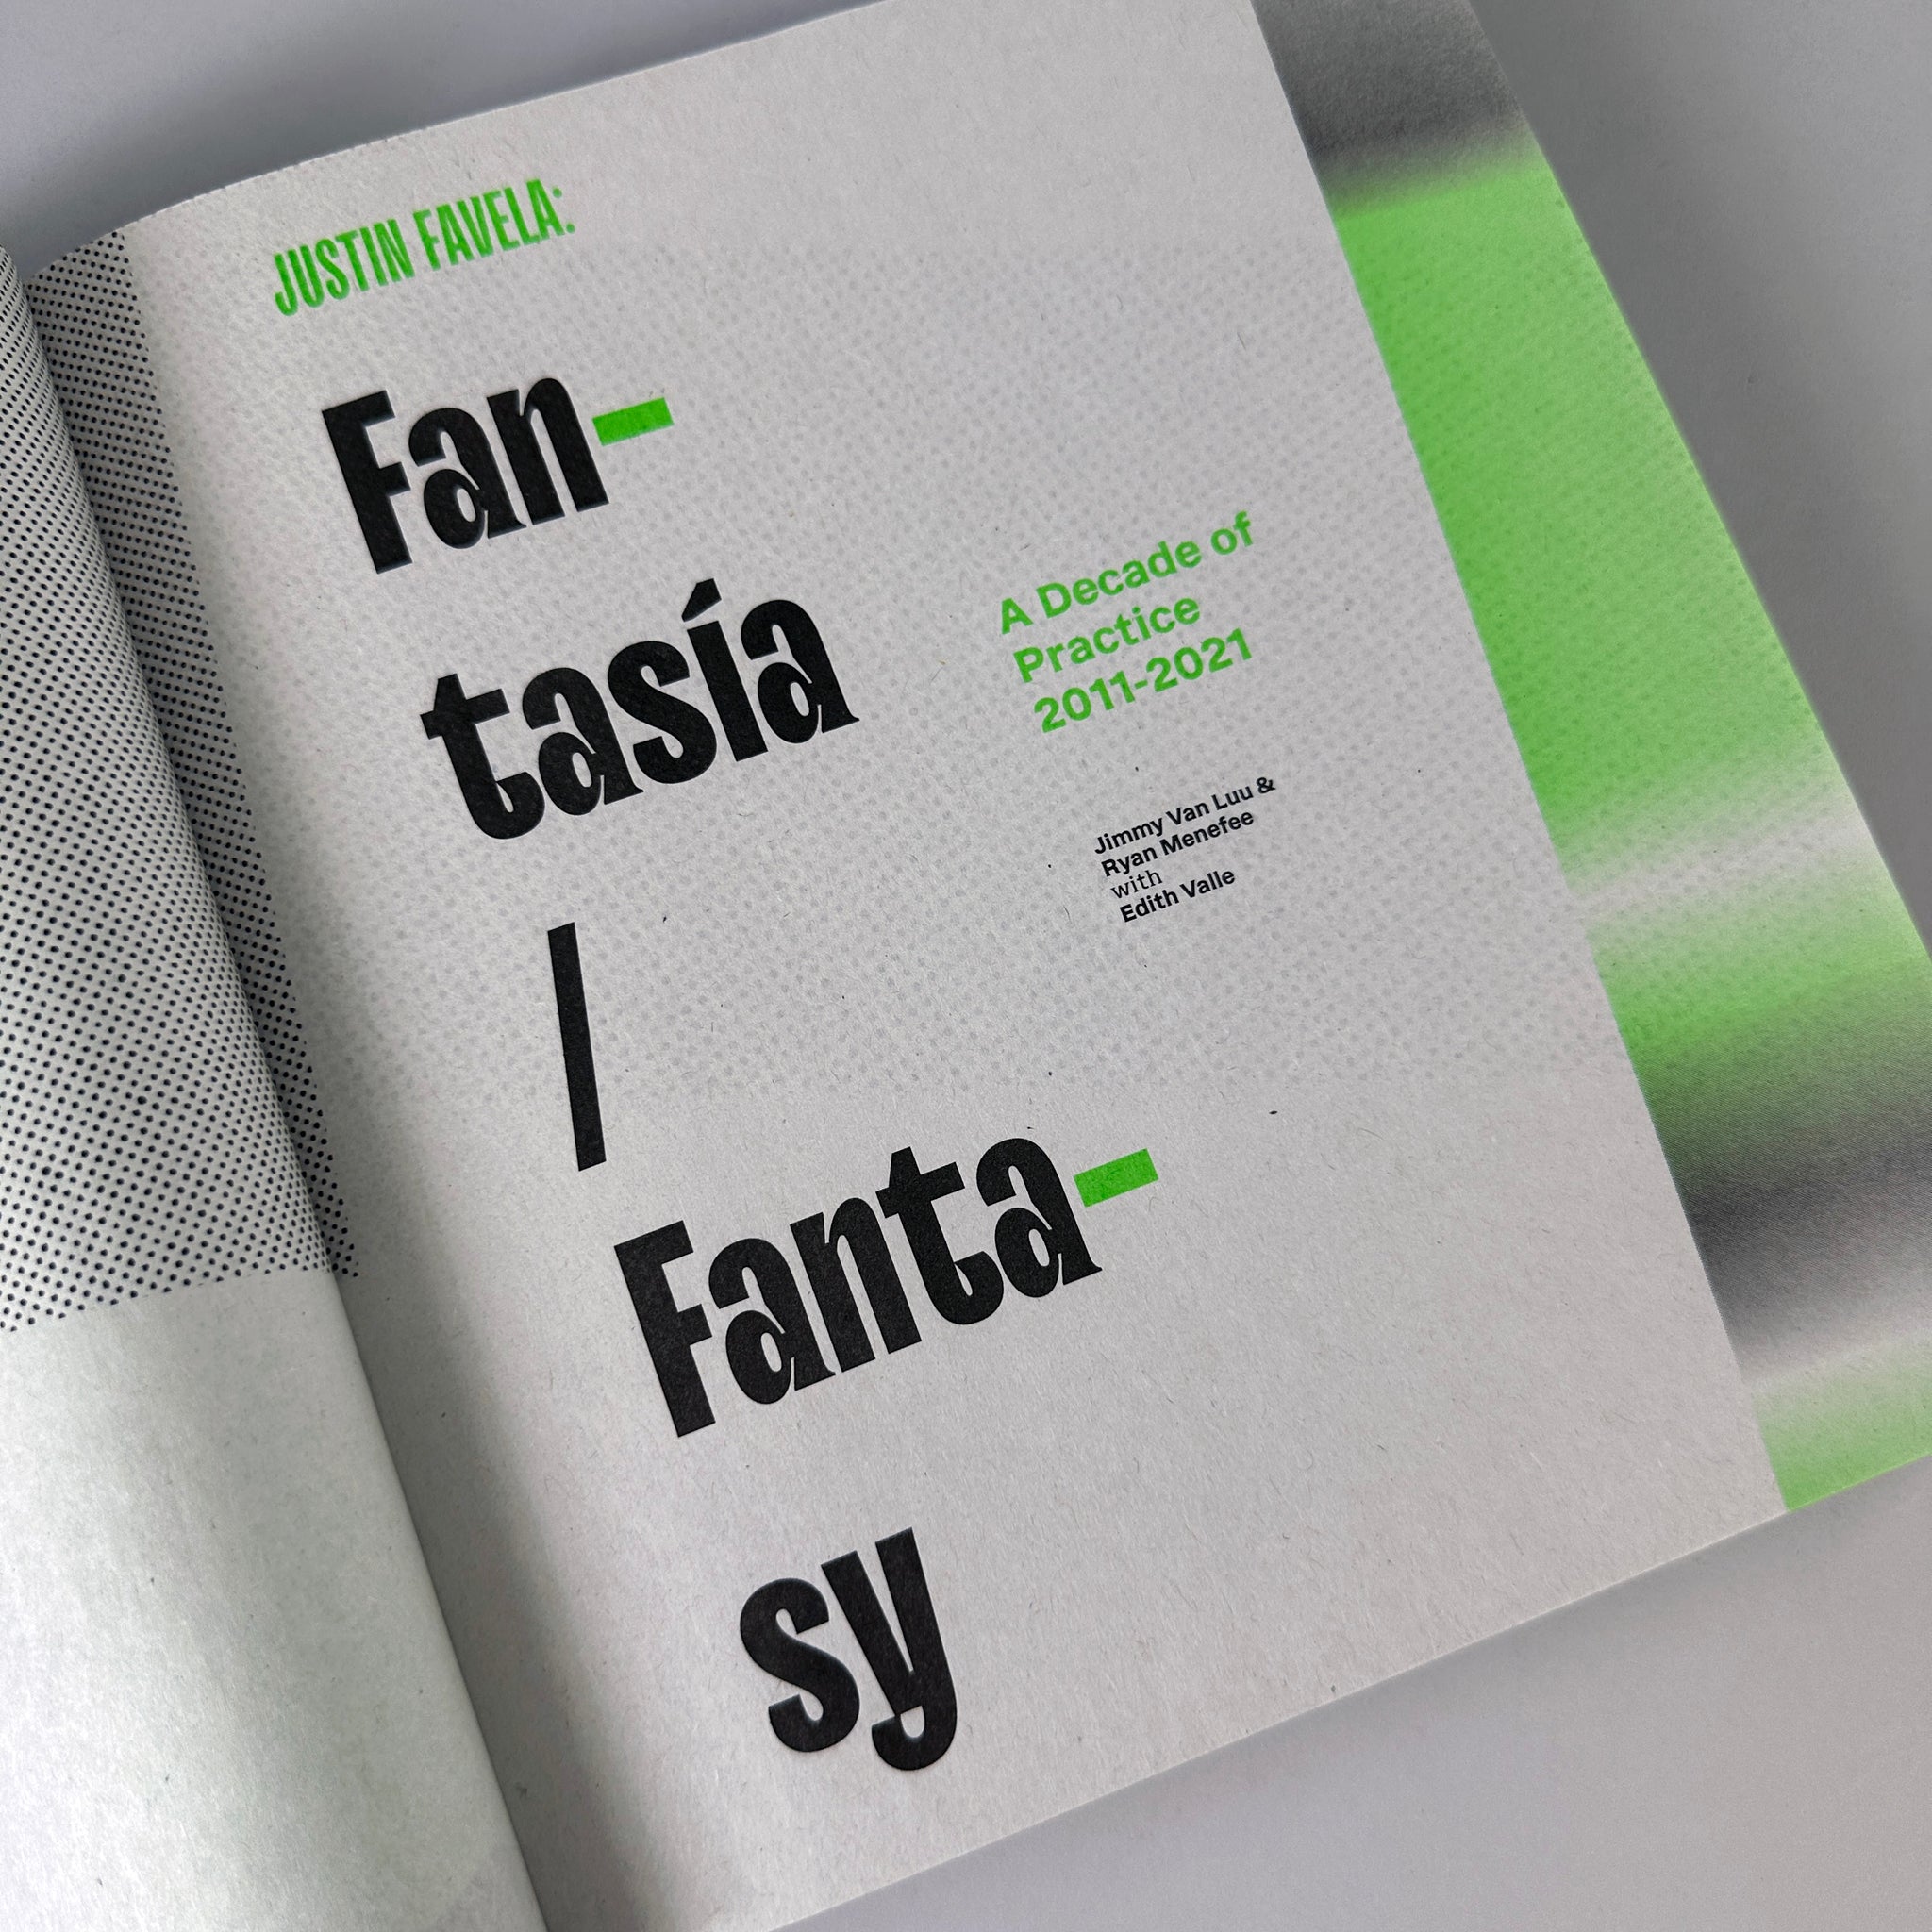 Justin Favela: Fantasía/Fantasy, A Decade of Practice, 2011-2021